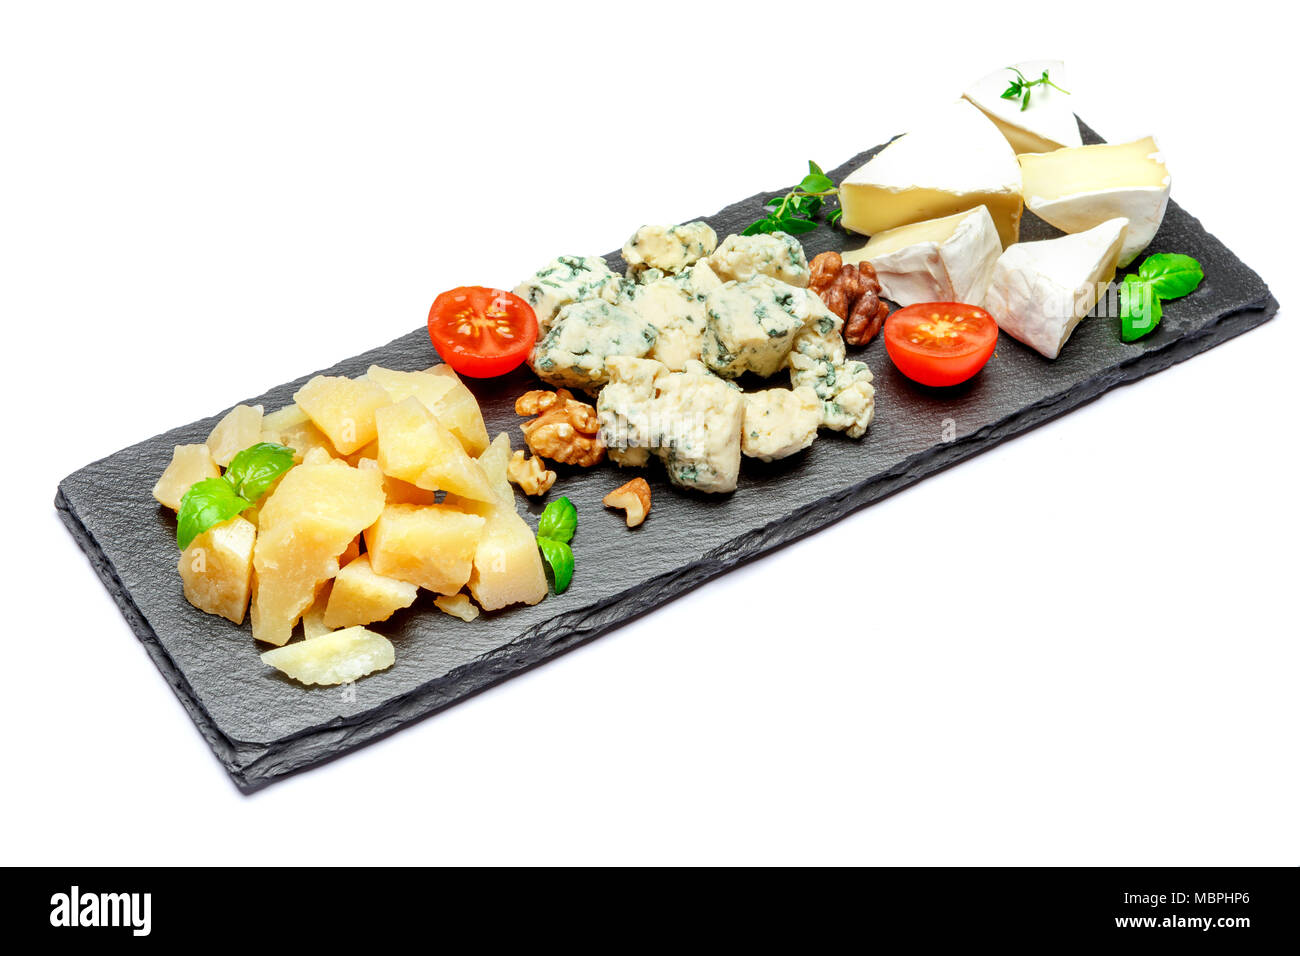 Assiette de fromage avec un assortiment de fromages camembert, Brie, Parmesan fromage bleu Banque D'Images